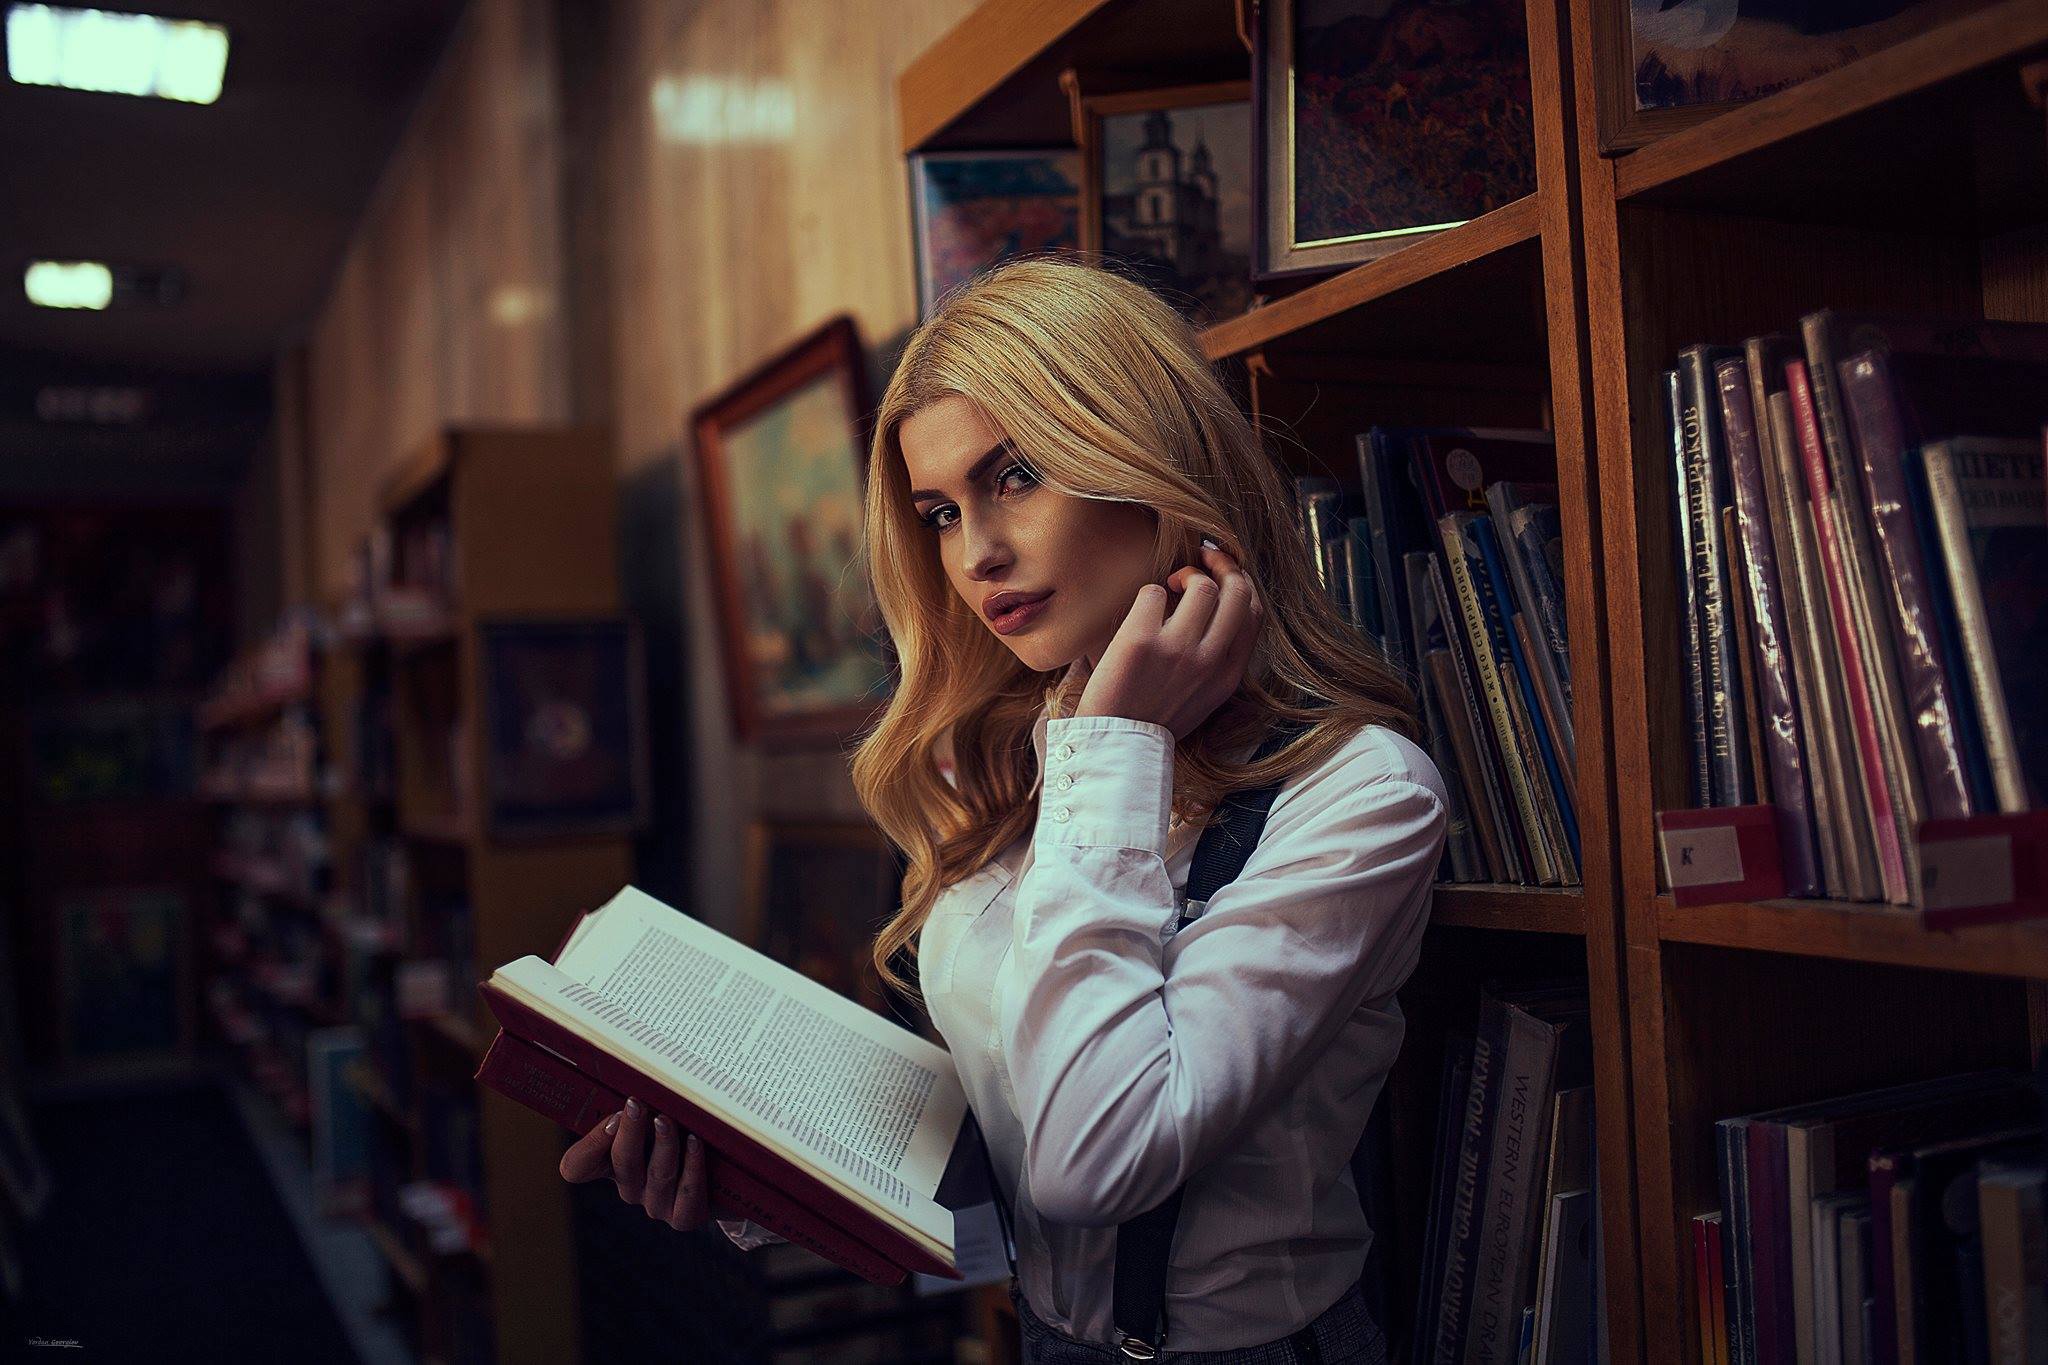 Читать приличный. Девушка с книгой. Девушка с книжкой. Девушка в библиотеке. Фотосъемка в библиотеке.